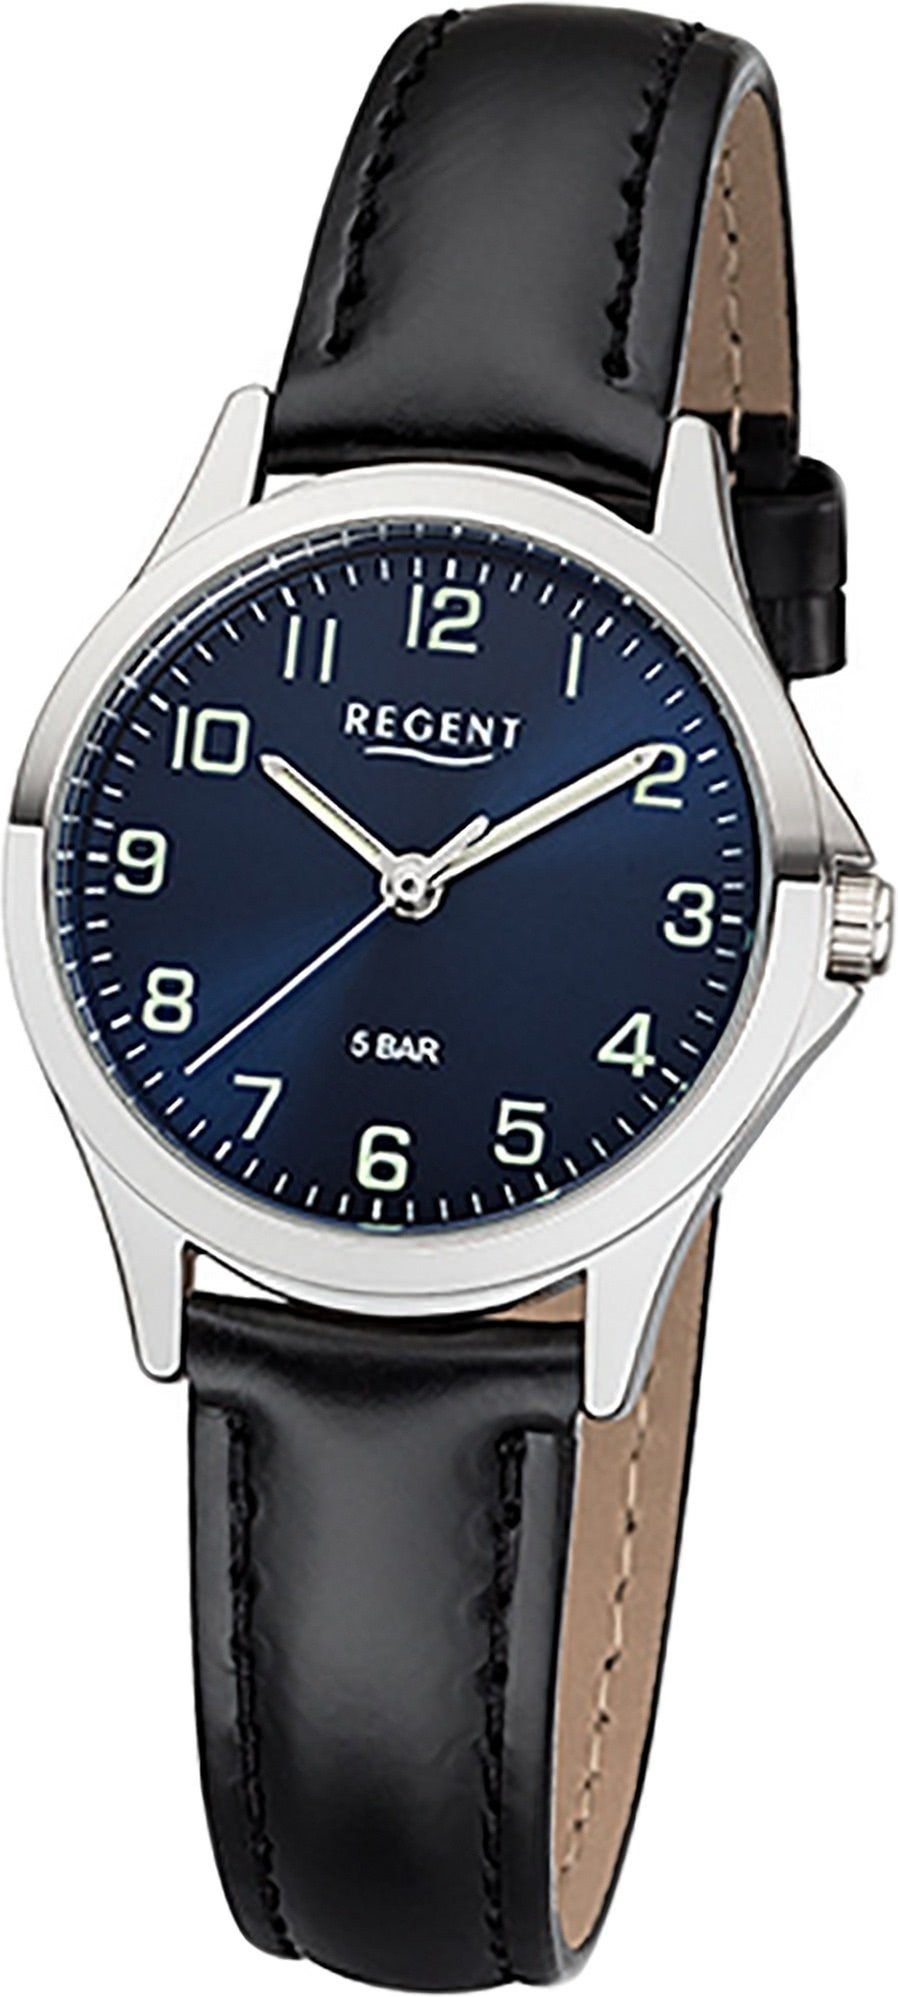 Regent Quarzuhr Regent Leder Damen Uhr 2112417 Analog, Damenuhr Lederarmband schwarz, rundes Gehäuse, klein (ca. 29mm)